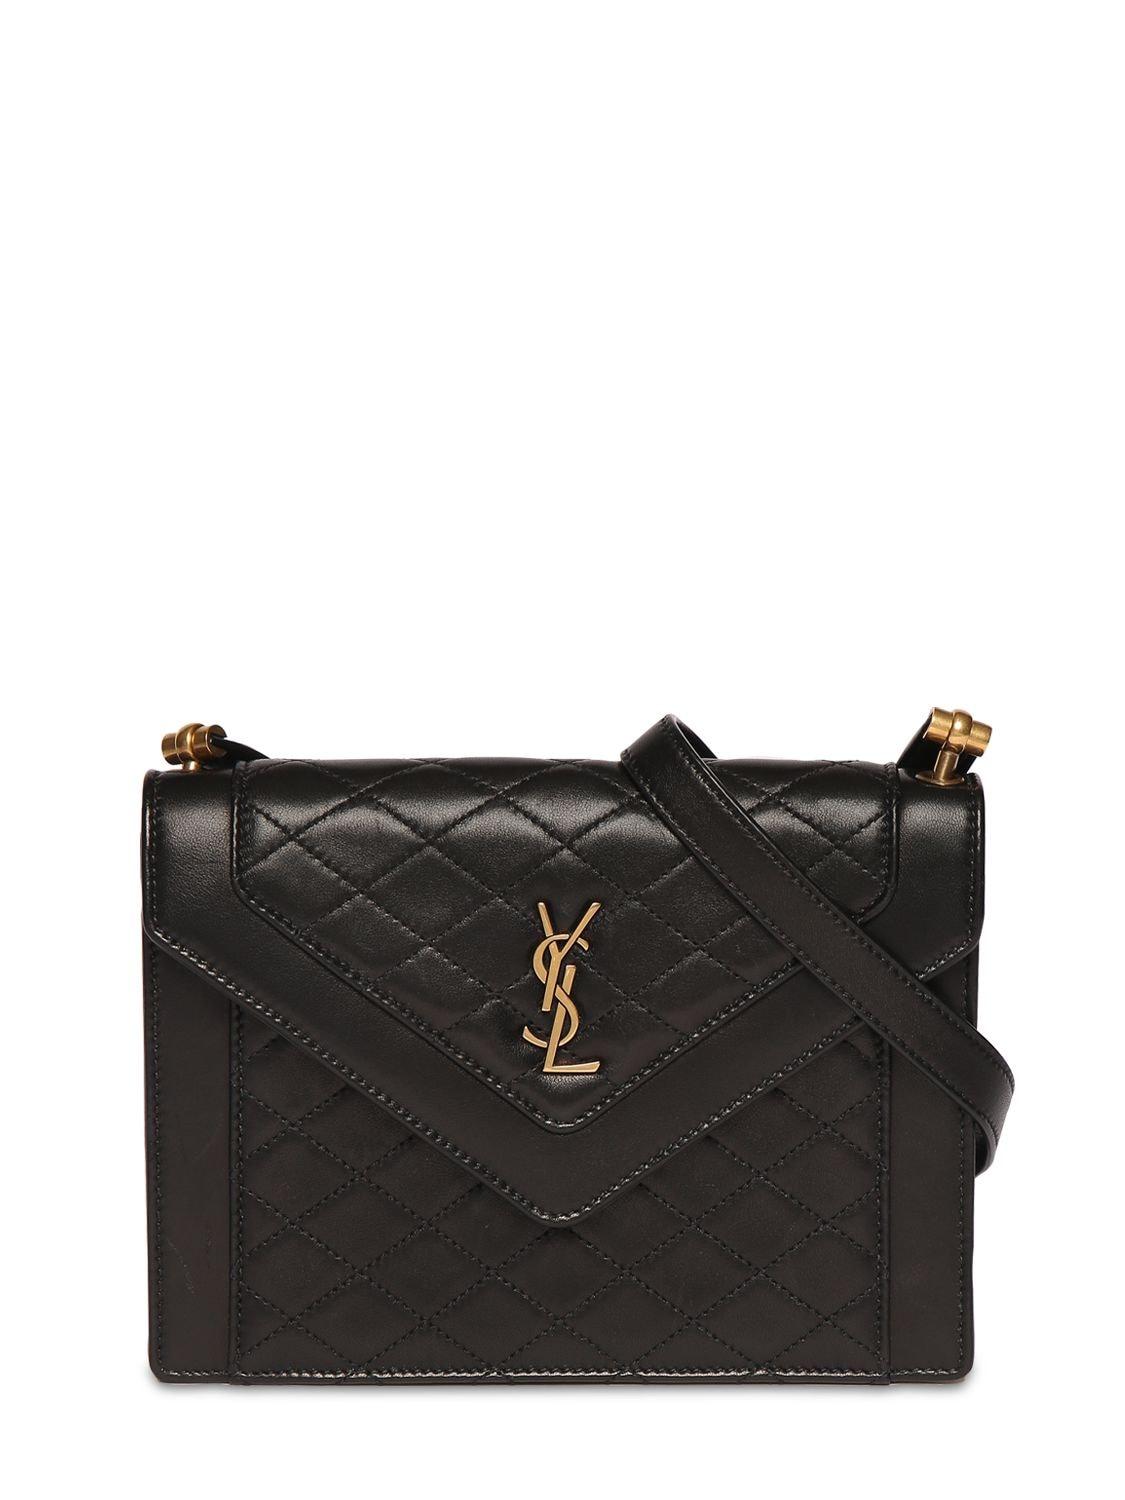 Saint Laurent Gaby Monogramme Leather Shoulder Bag in Black